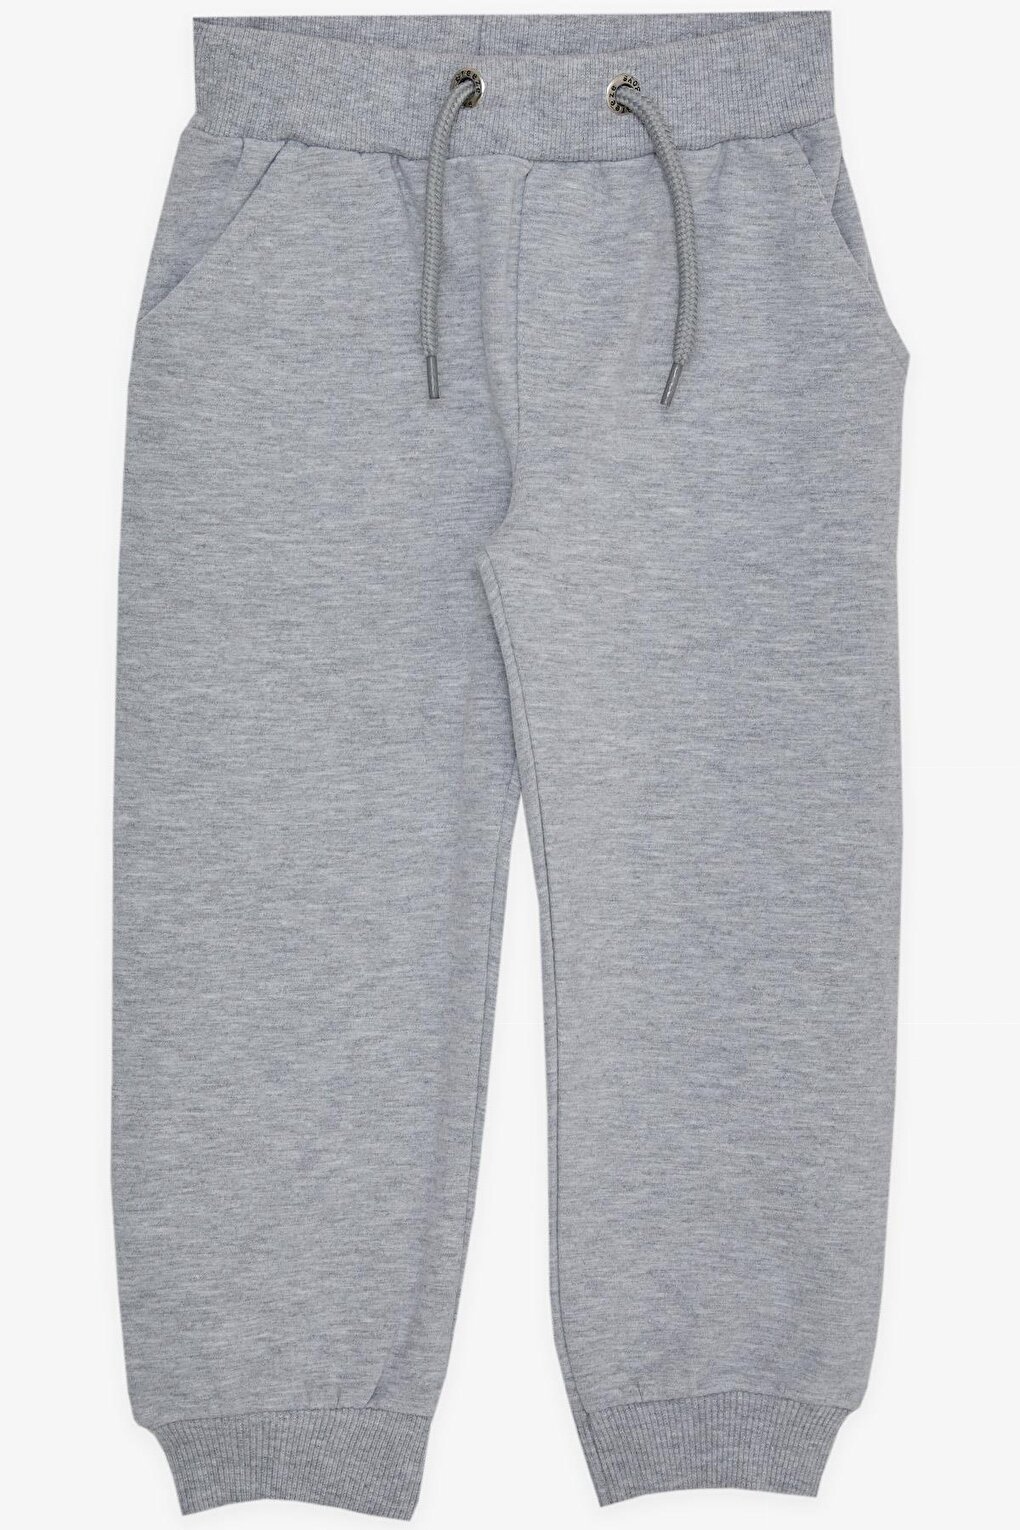 Спортивные штаны для мальчика с карманом светло-серого меланжа (3–8 лет) Breeze, серо-бежевый